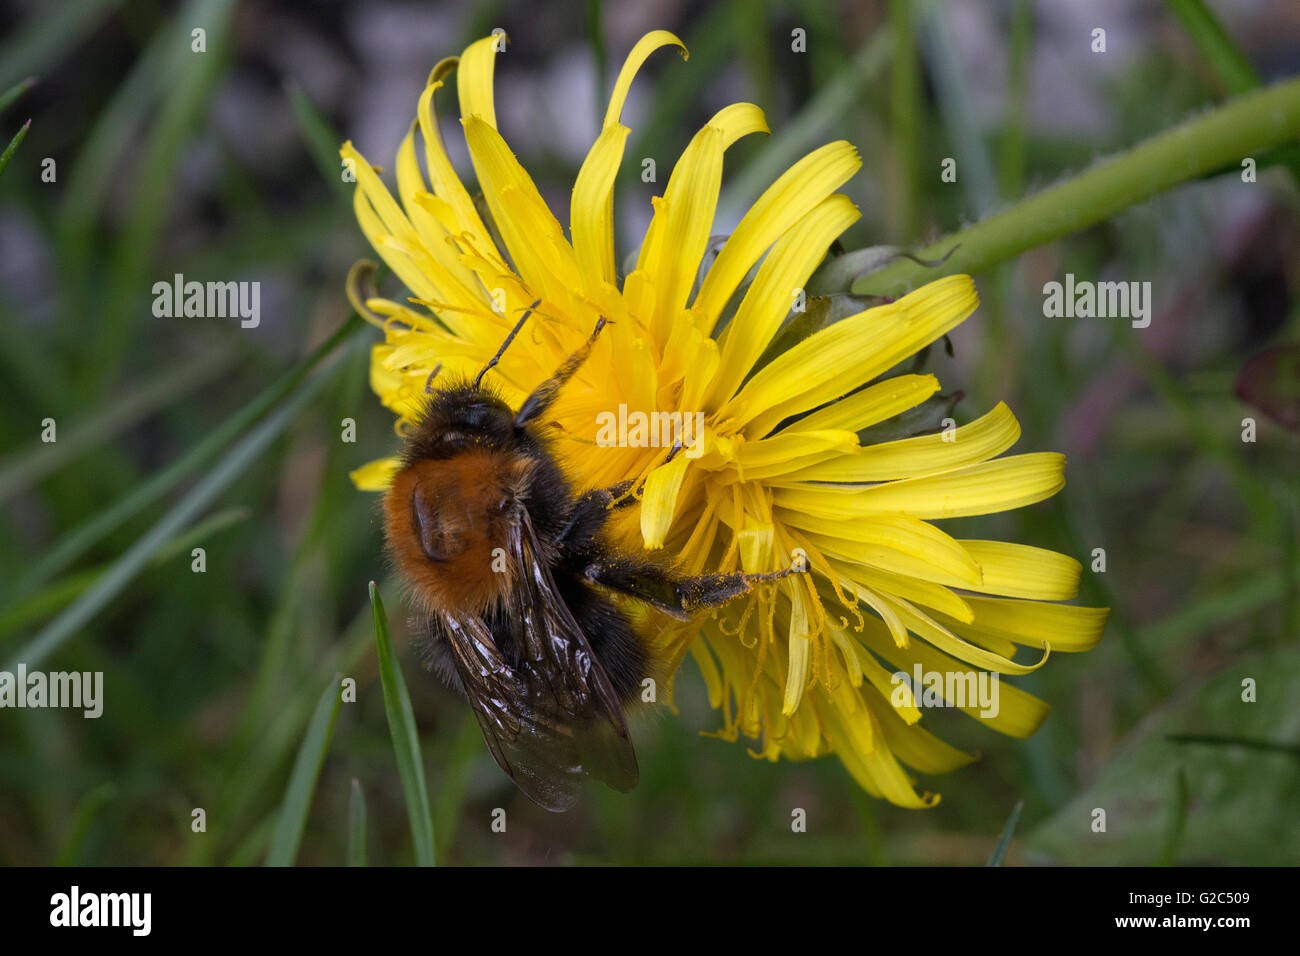 Biene, mit Blütenstaub an dein Beinen, an einer Löwenzahnblume  Bee with pollen on the legs, on a dandelion flower Stock Photo